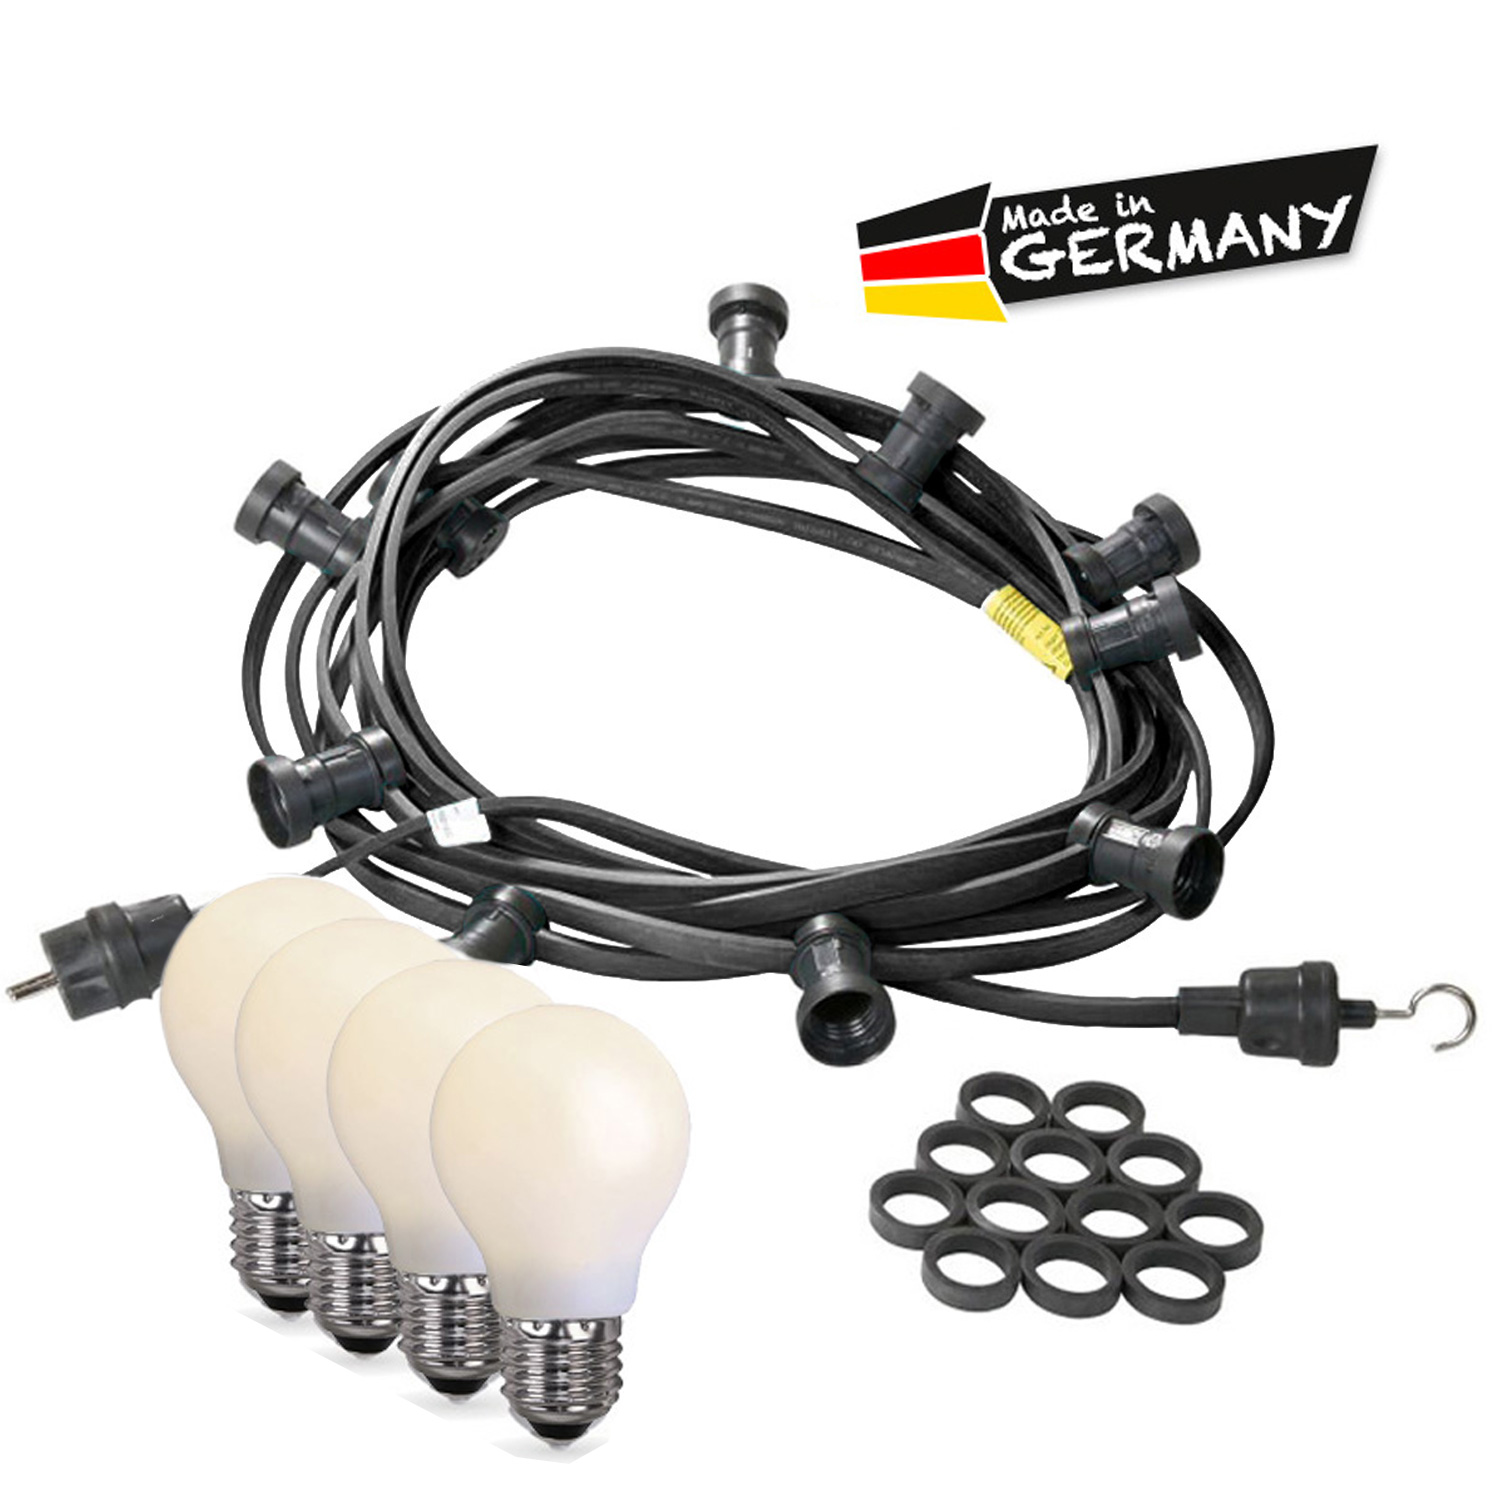 Illu-/Partylichterkette 30m - Außen - Made in Germany - 50 bruchfeste opale LED Tropfenlampen